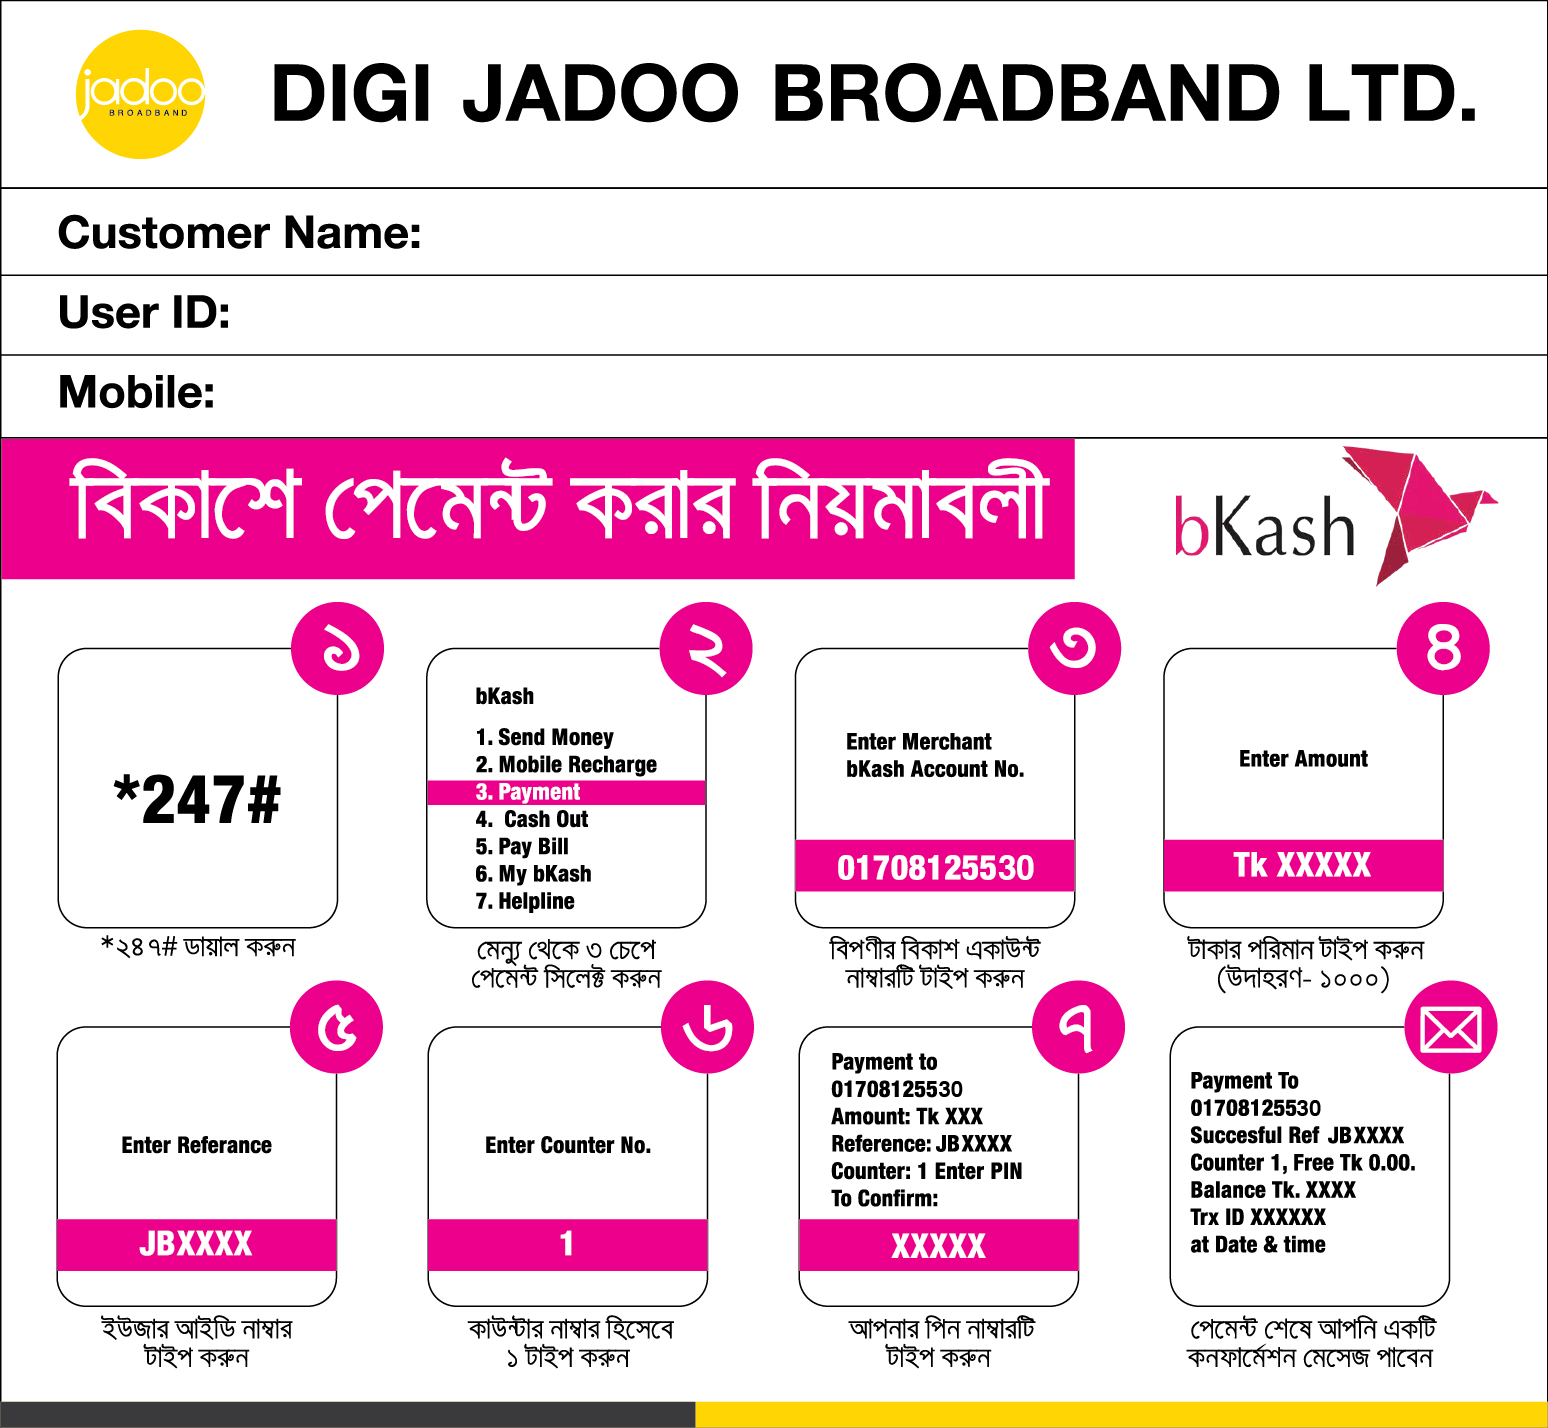 Bkash-Payment-for-Digi-Jadoo Manual